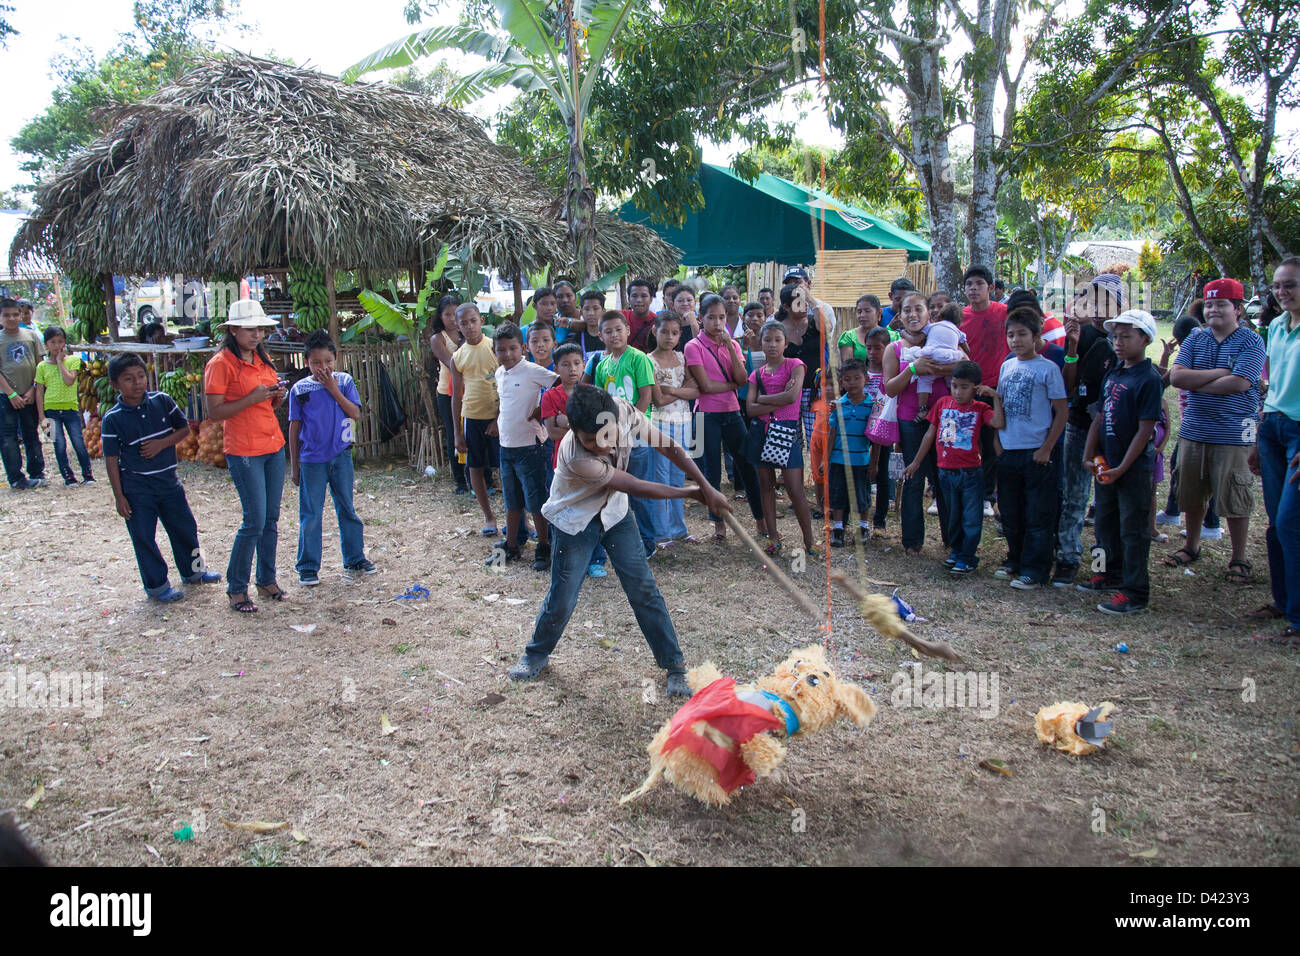 Ein panamaischer junge versucht ein Pinata am Festival De La Naranja aufzubrechen. Stockfoto